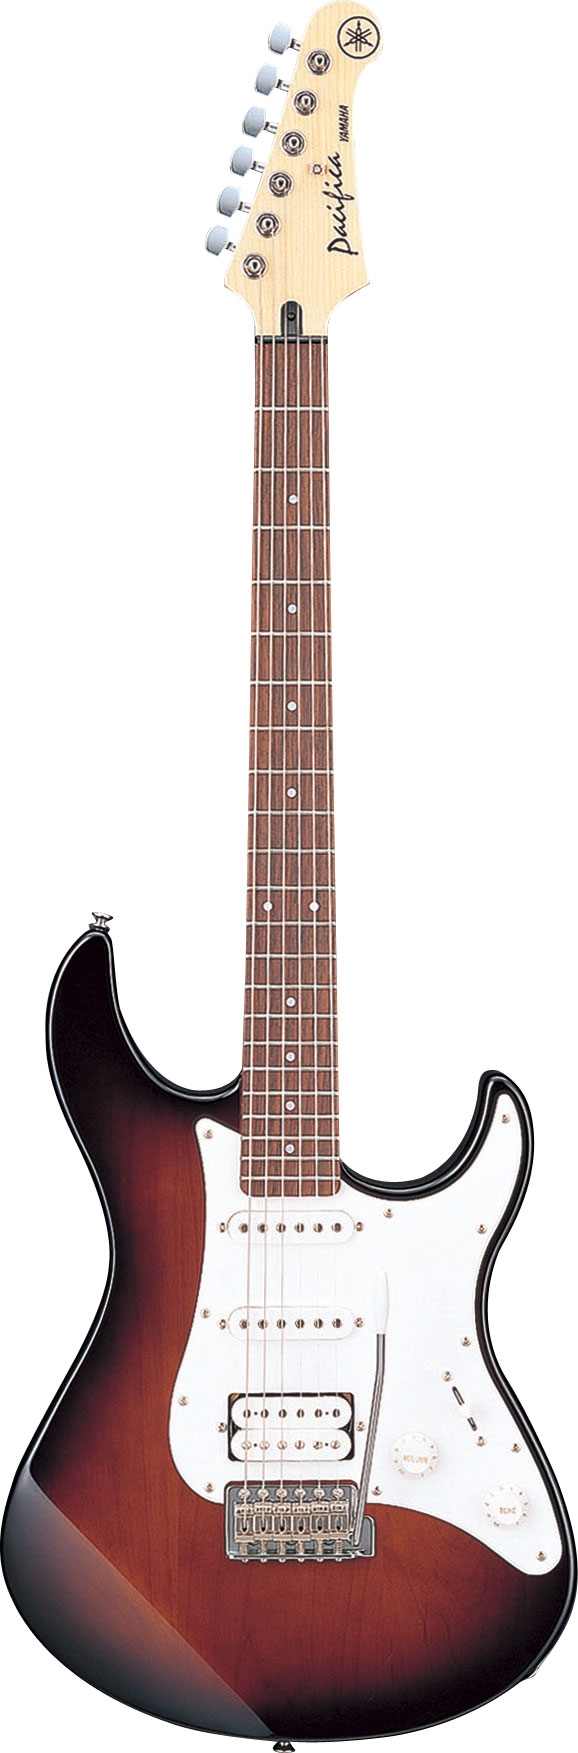 Electric guitar PACIFICA112J màu đỏ tối